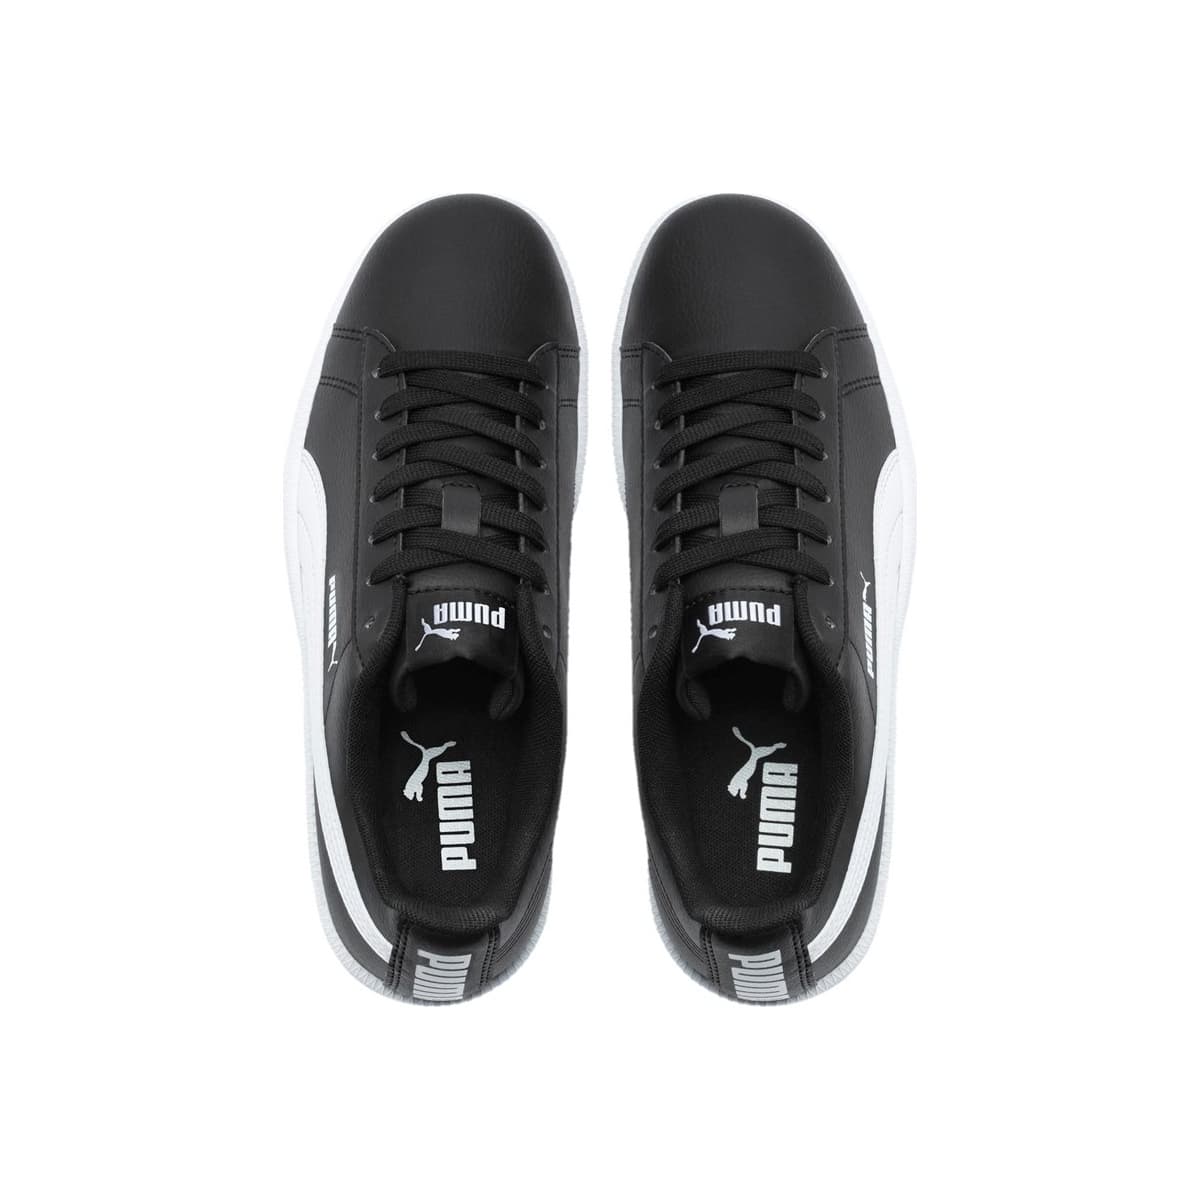 Puma Up Baseline Kadın Siyah Spor Ayakkabı (373600-01)